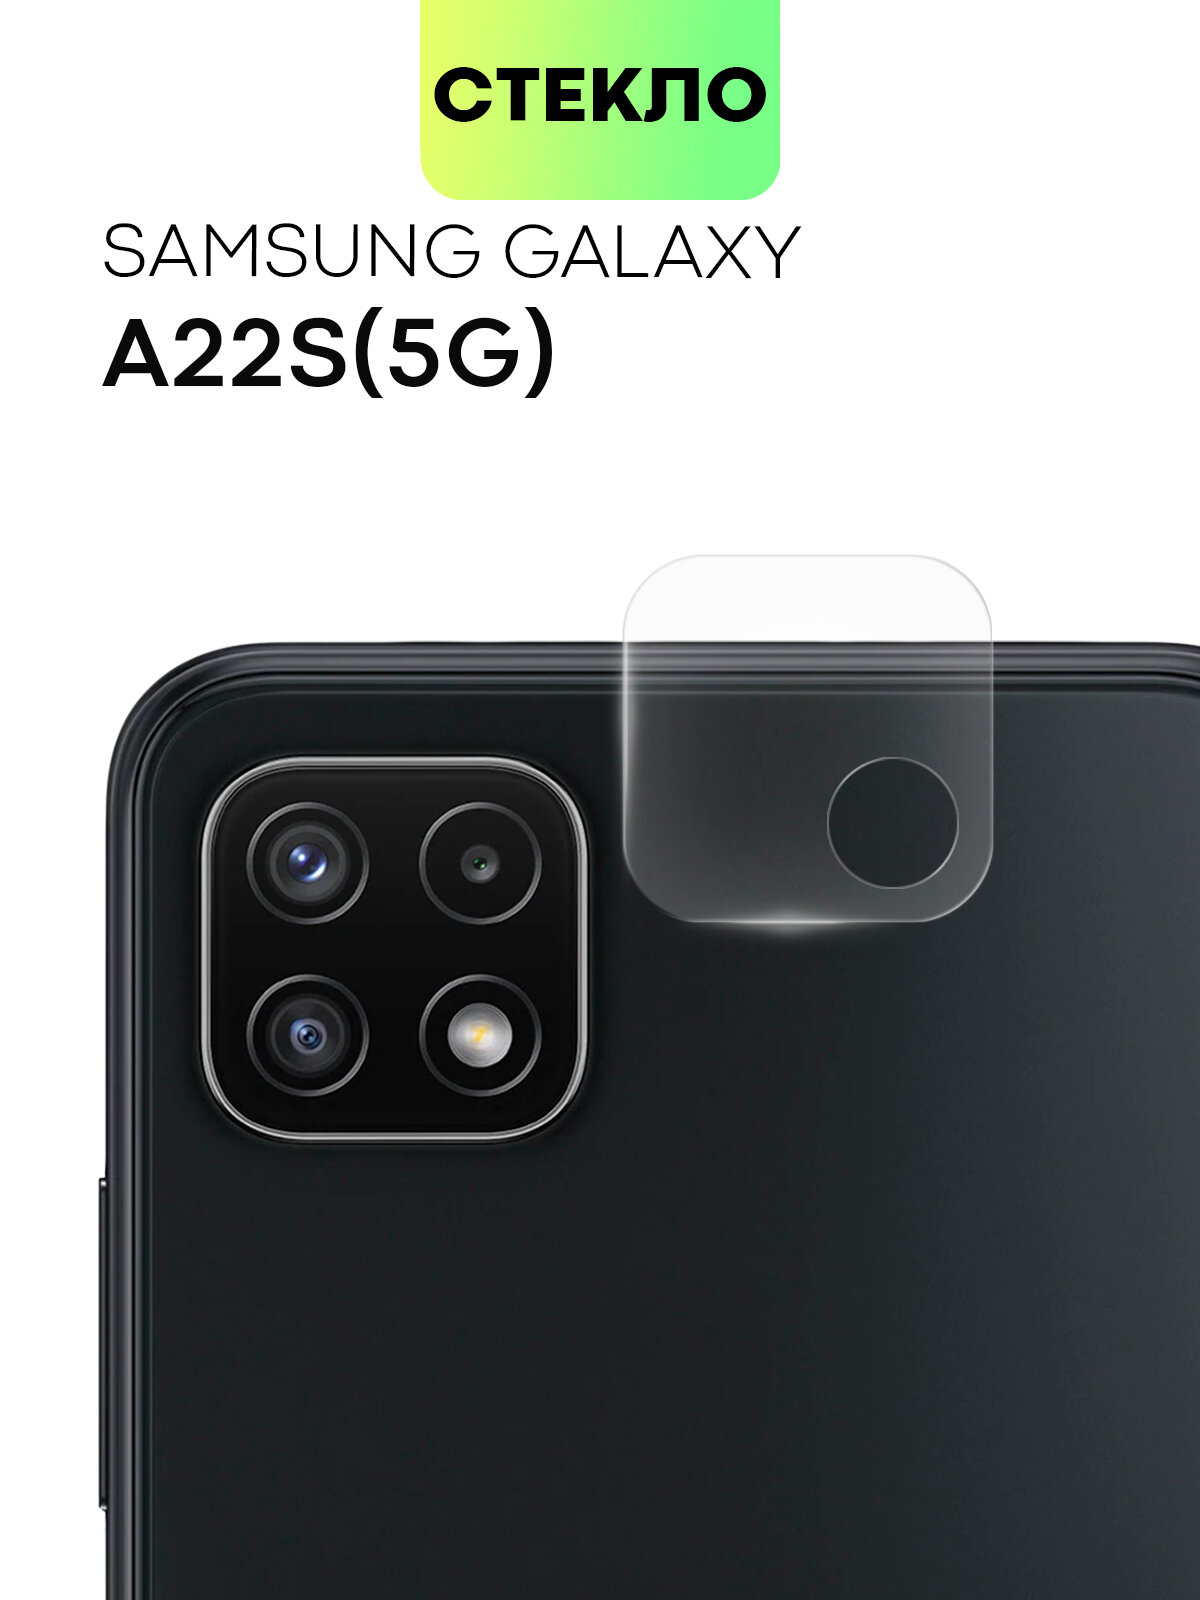 Стекло на камеру телефона Samsung Galaxy A22S 5G (Самсунг Галакси А22С 5Г) защитное стекло BROSCORP для защиты модуля камер прозрачное